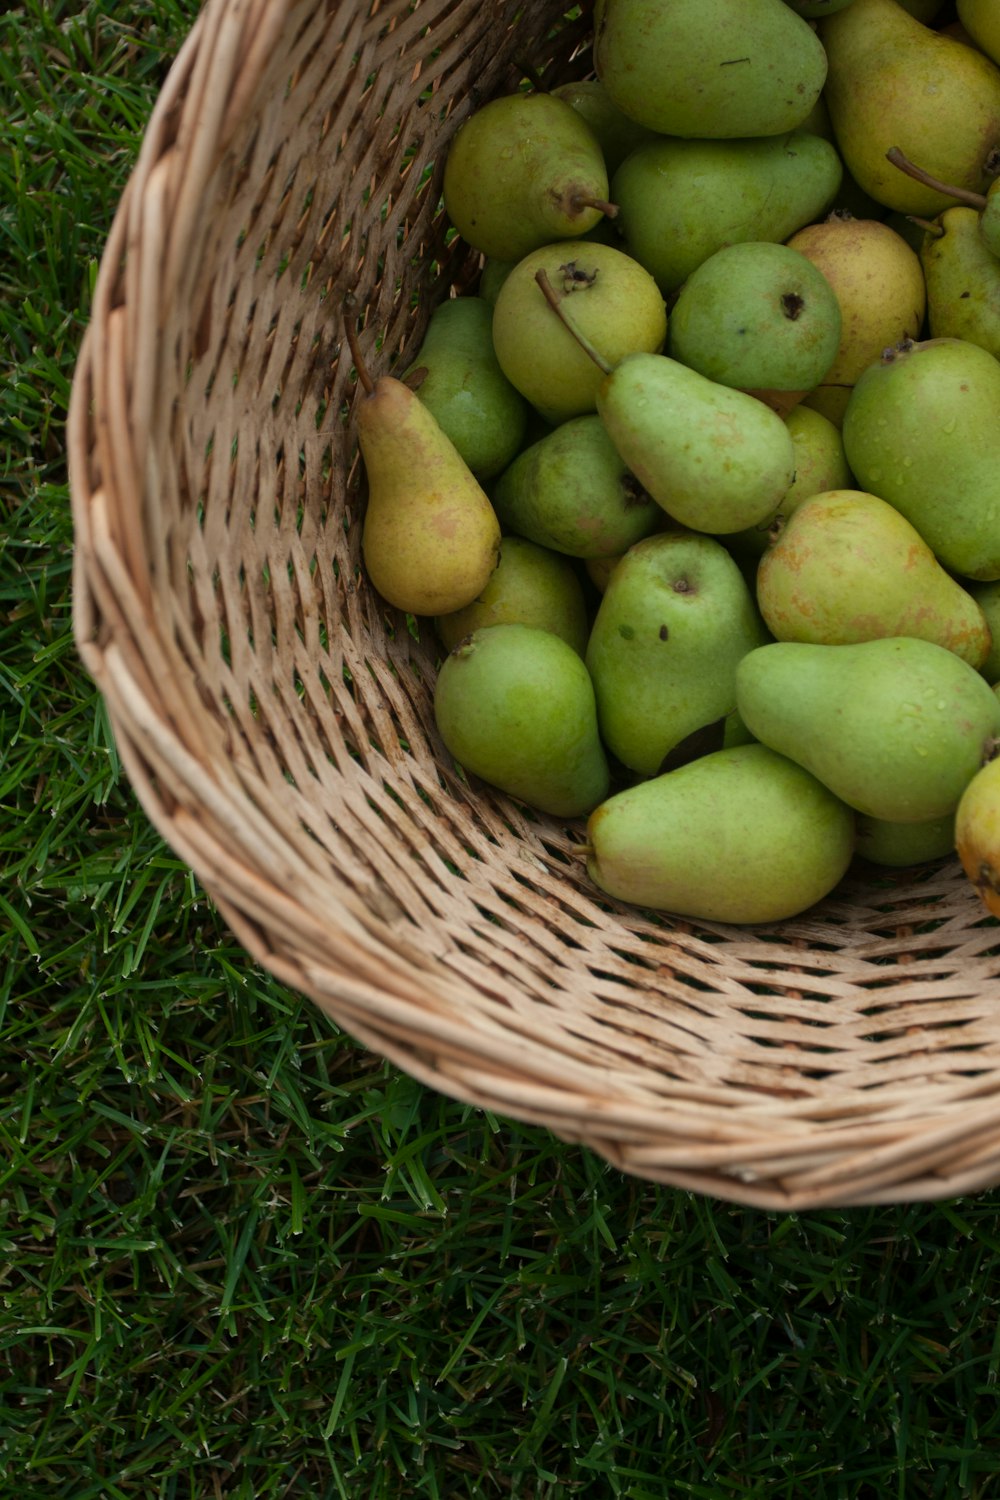 pile of green pears in wicker basket